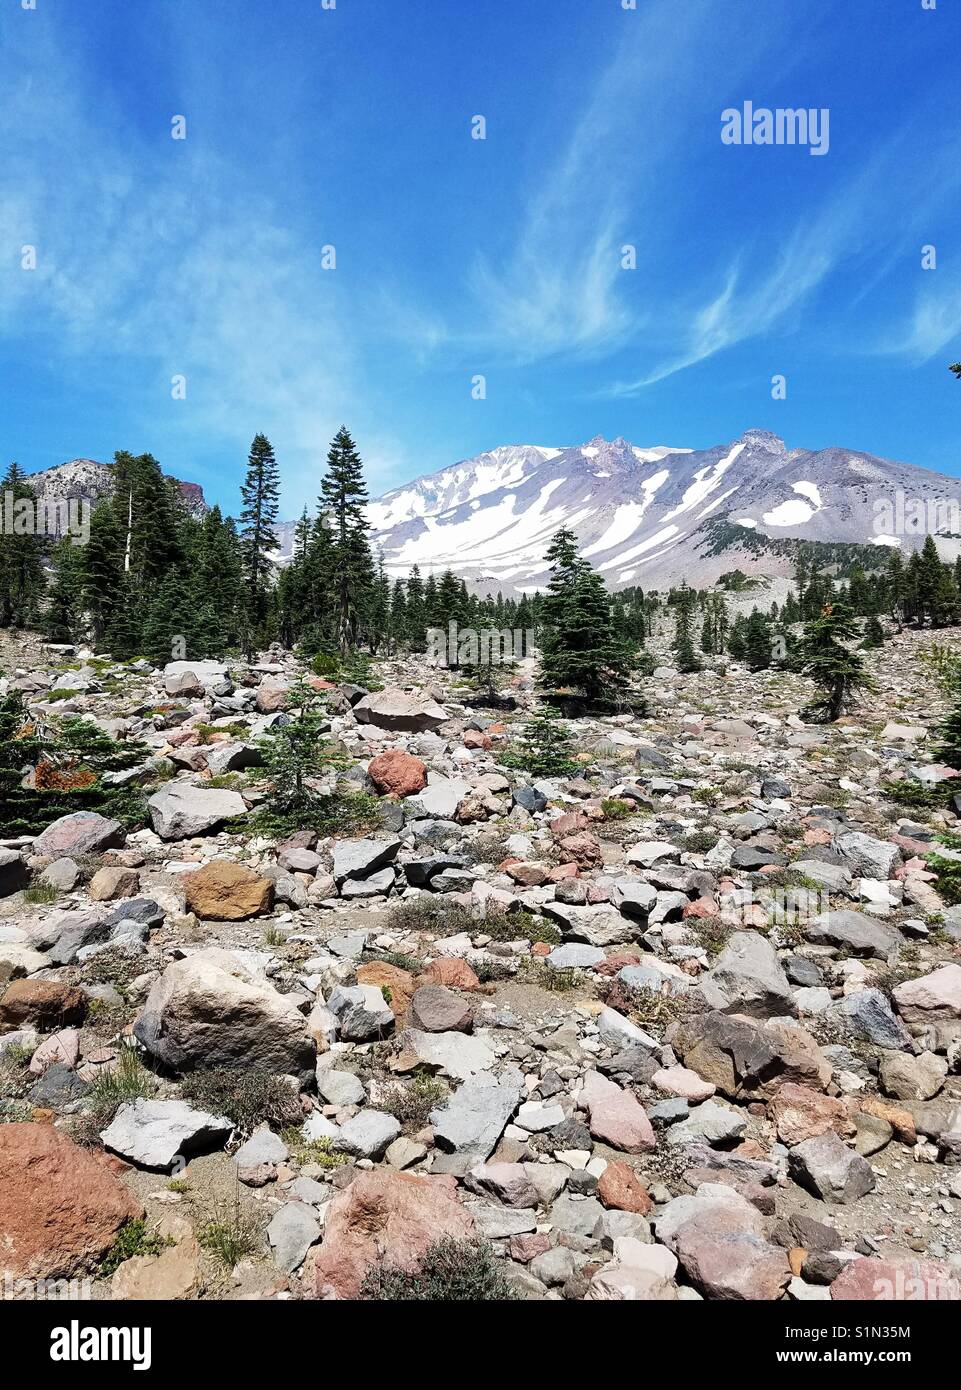 Nähert sich der Gipfel des geheimnisvollen Mount Shasta, diese vertikale Format verfügt über einen großen Stein Geröll Feld im Vordergrund. Stockfoto